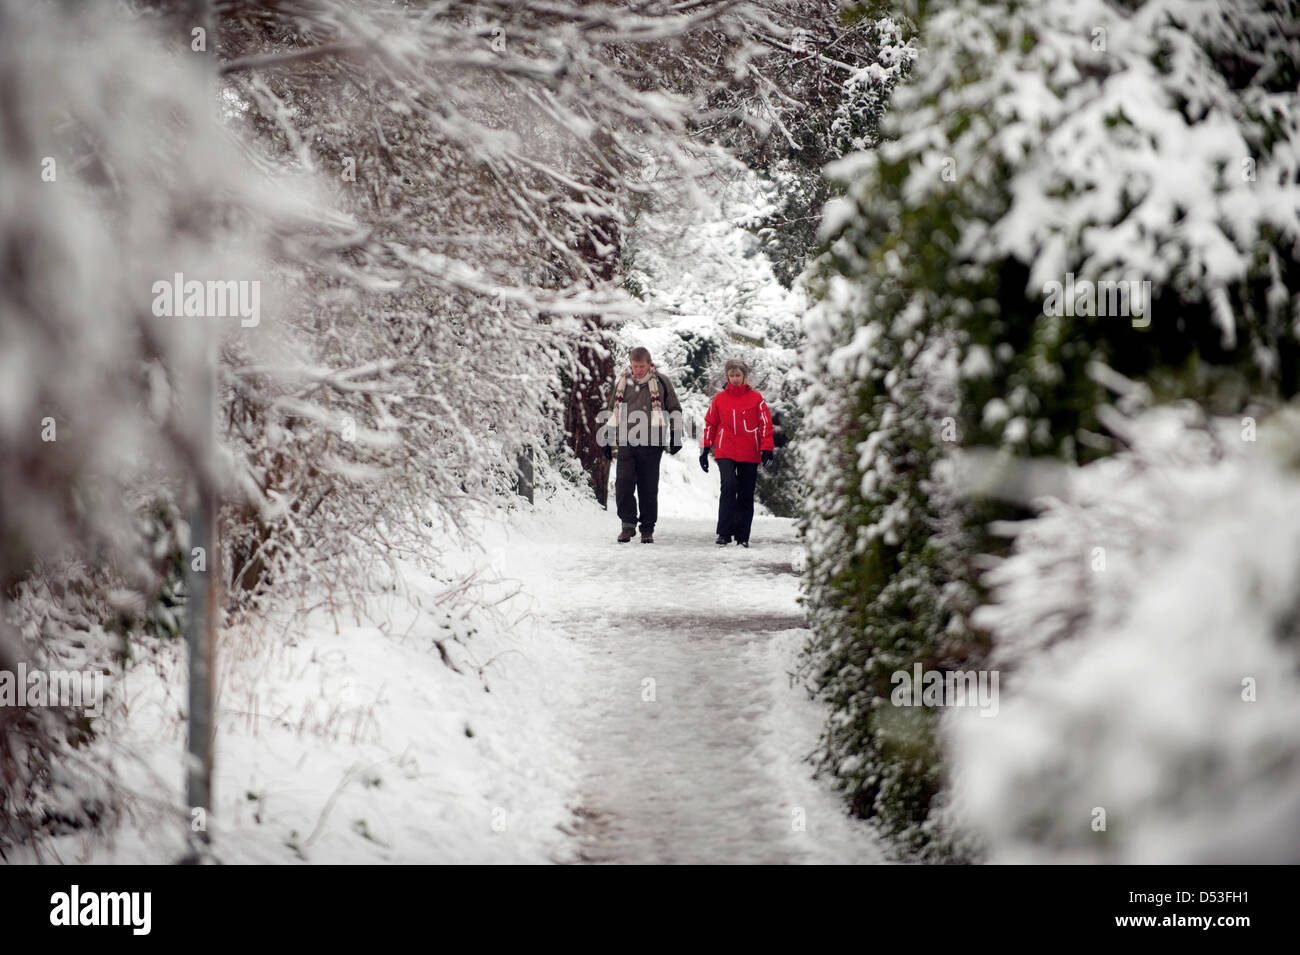 Lichfield, dans le Staffordshire, au Royaume-Uni. 23 mars 2013. Le printemps commence, fortes chutes de neige des couvertures la ville de Lichfield Staffordshire du jour au lendemain. Crédit : Richard Grange / Alamy Live News Banque D'Images